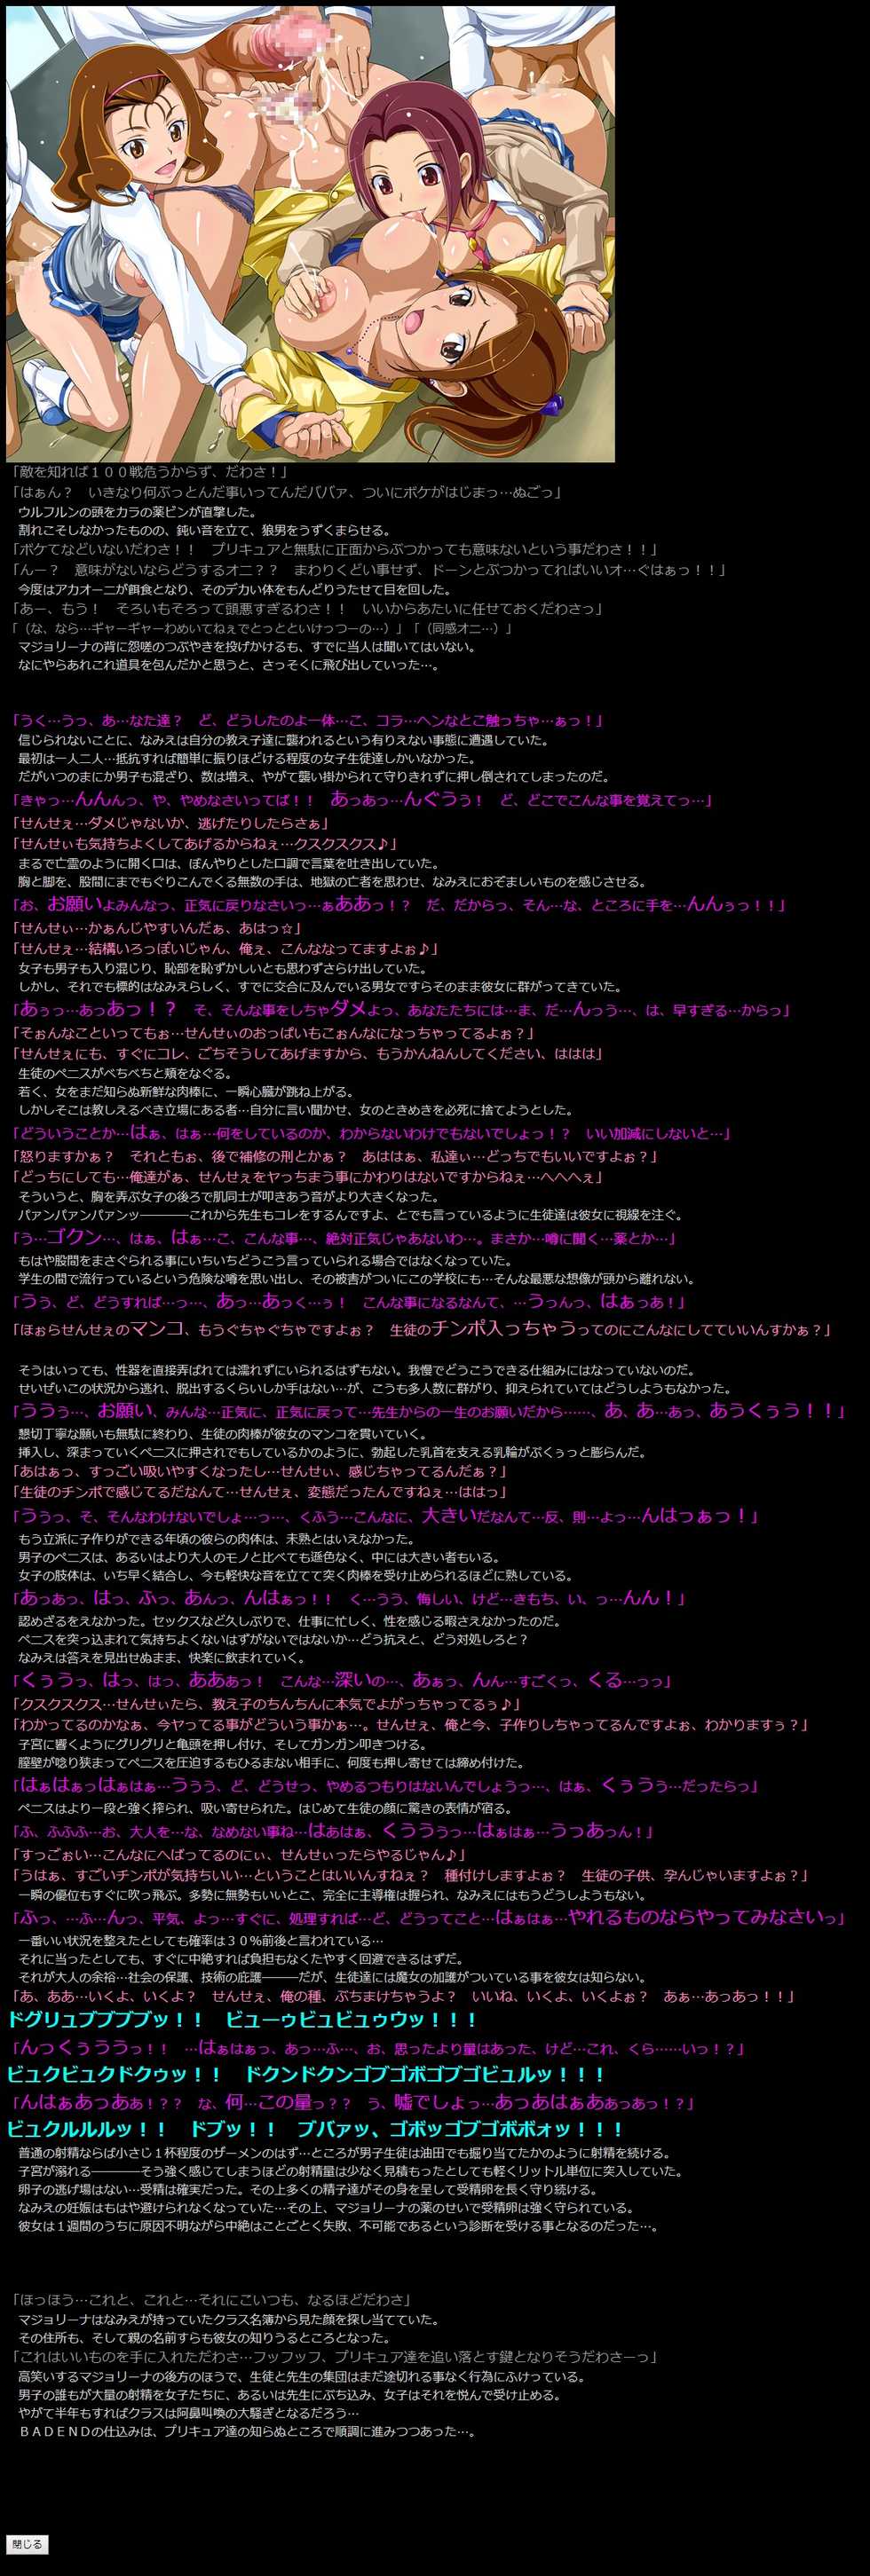 (SC58) [LolitaChannel (Arigase Shinji)] Yuumei Chara Kannou Shousetsu CG Shuu No. 245!! Smile PreCure! 2 HaaHaa CG Shuu (Smile PreCure!) - Page 8